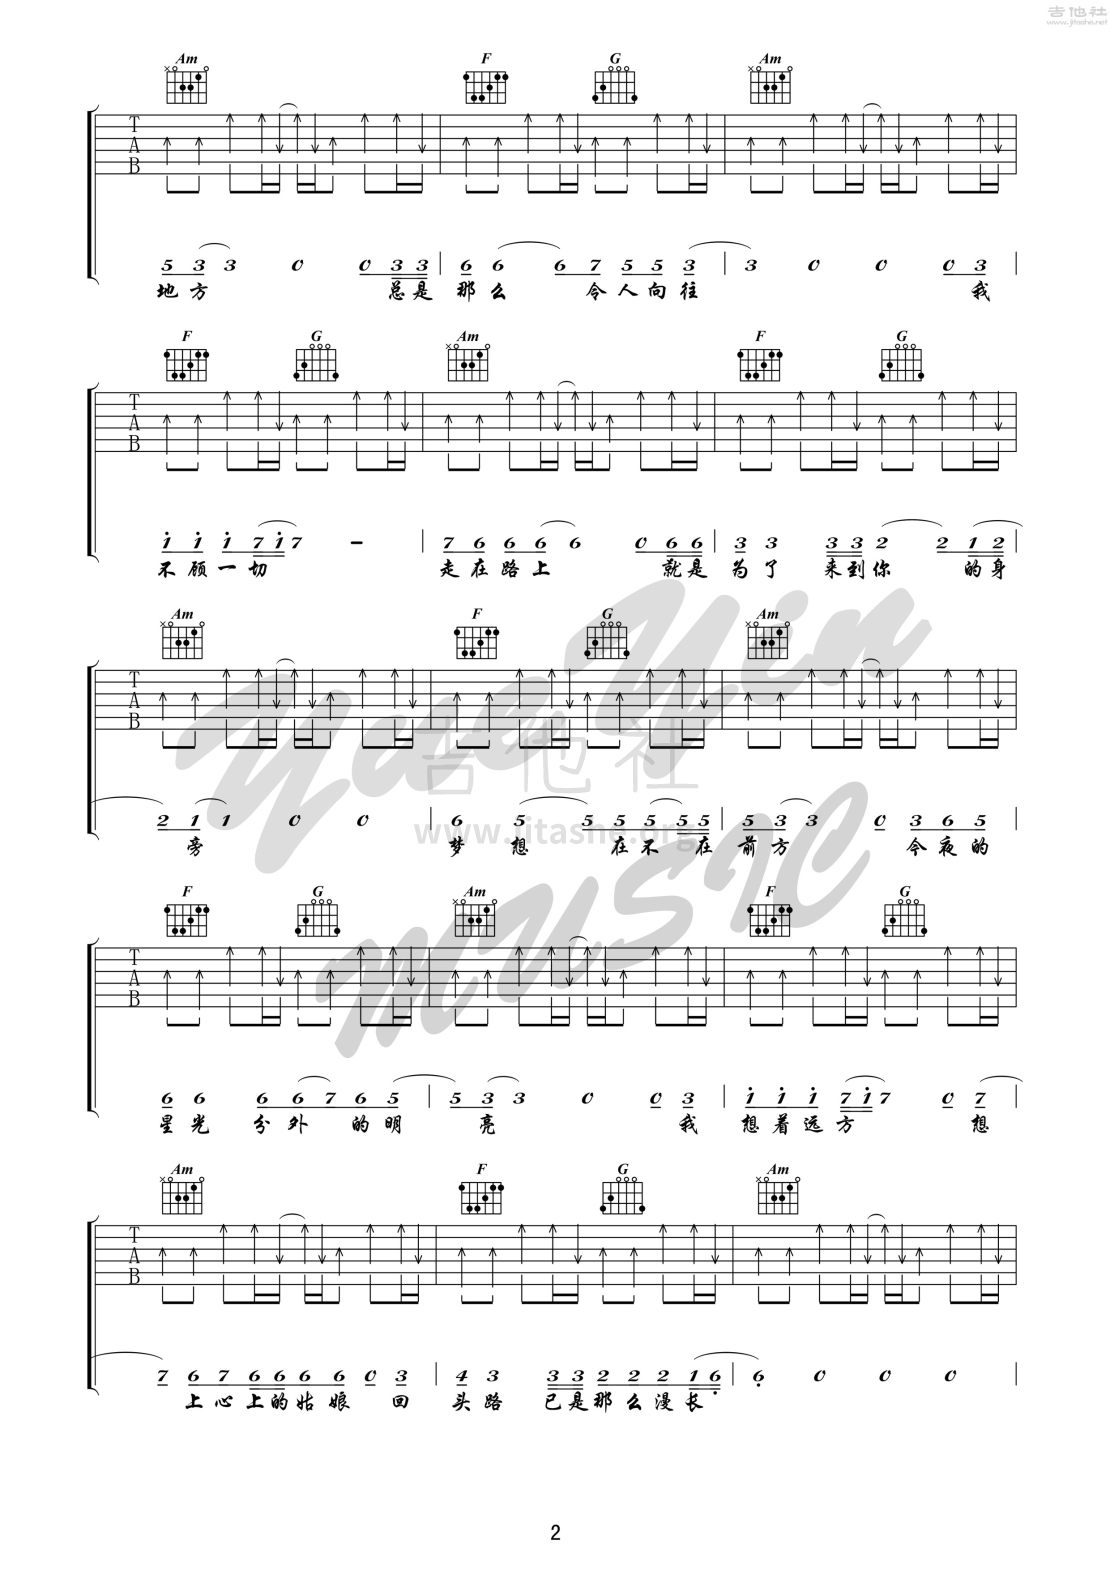 公路之歌 吉他 （悦音之声音乐工作室吉他教学系列 痛仰乐队系列 I ）吉他谱(图片谱,弹唱,公路之歌)_痛苦的信仰(痛仰)_公路之歌 2.jpg